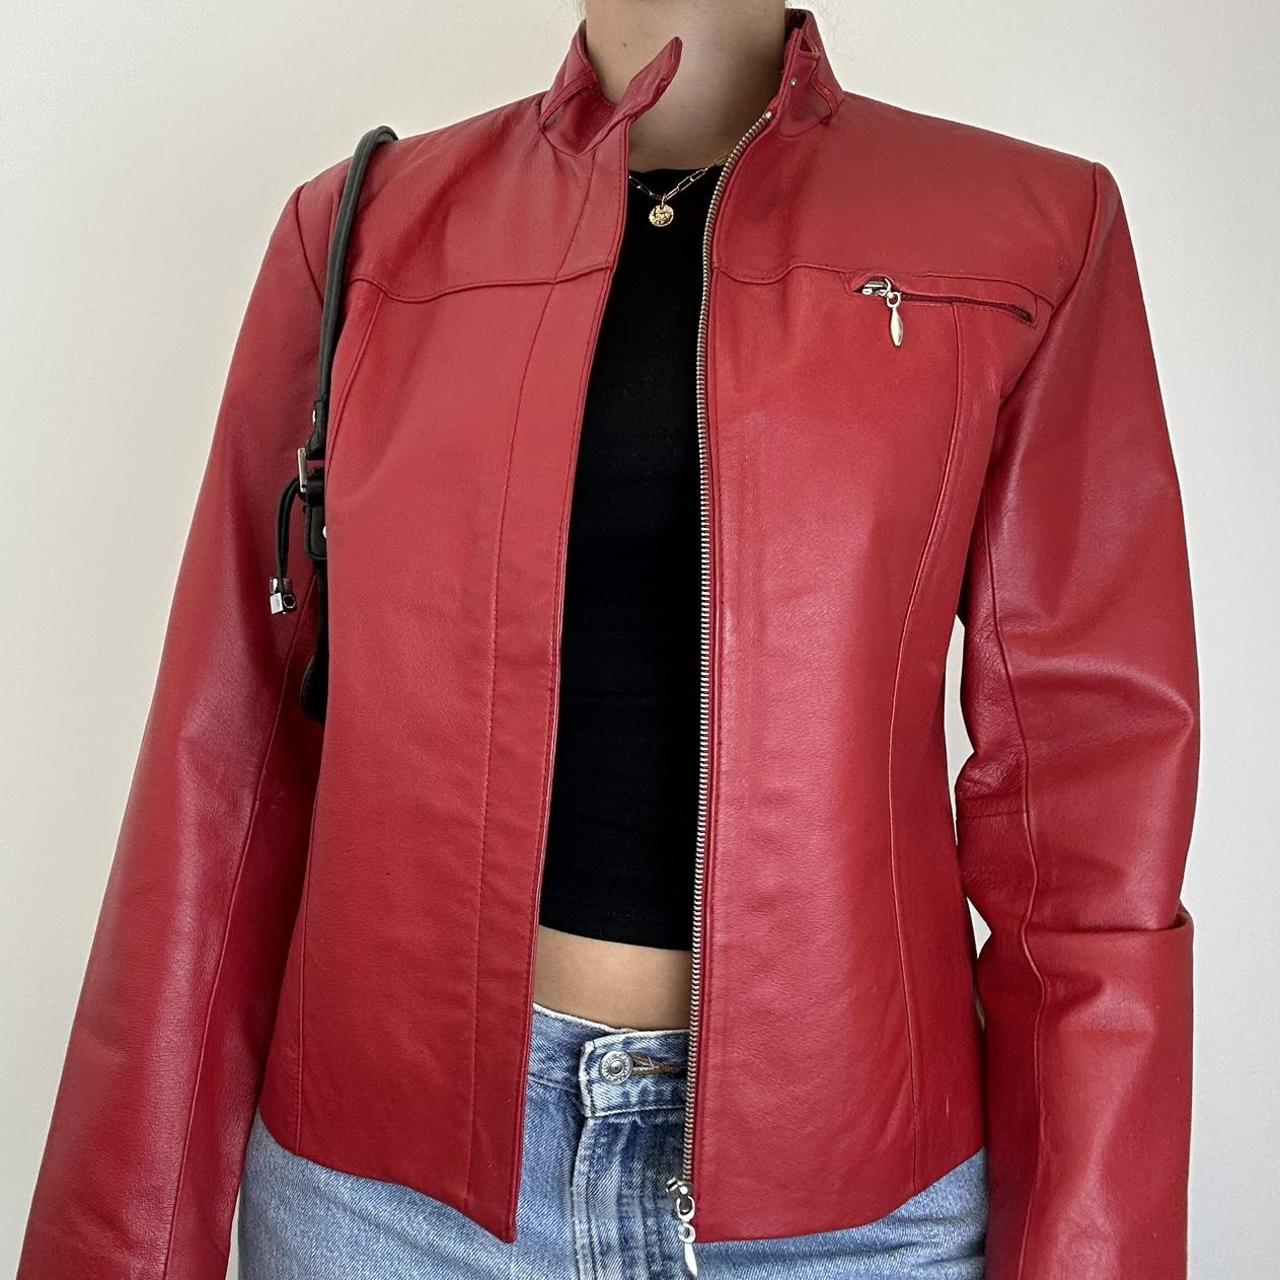 Vintage red leather zip up jacket Size 12- Shown... - Depop